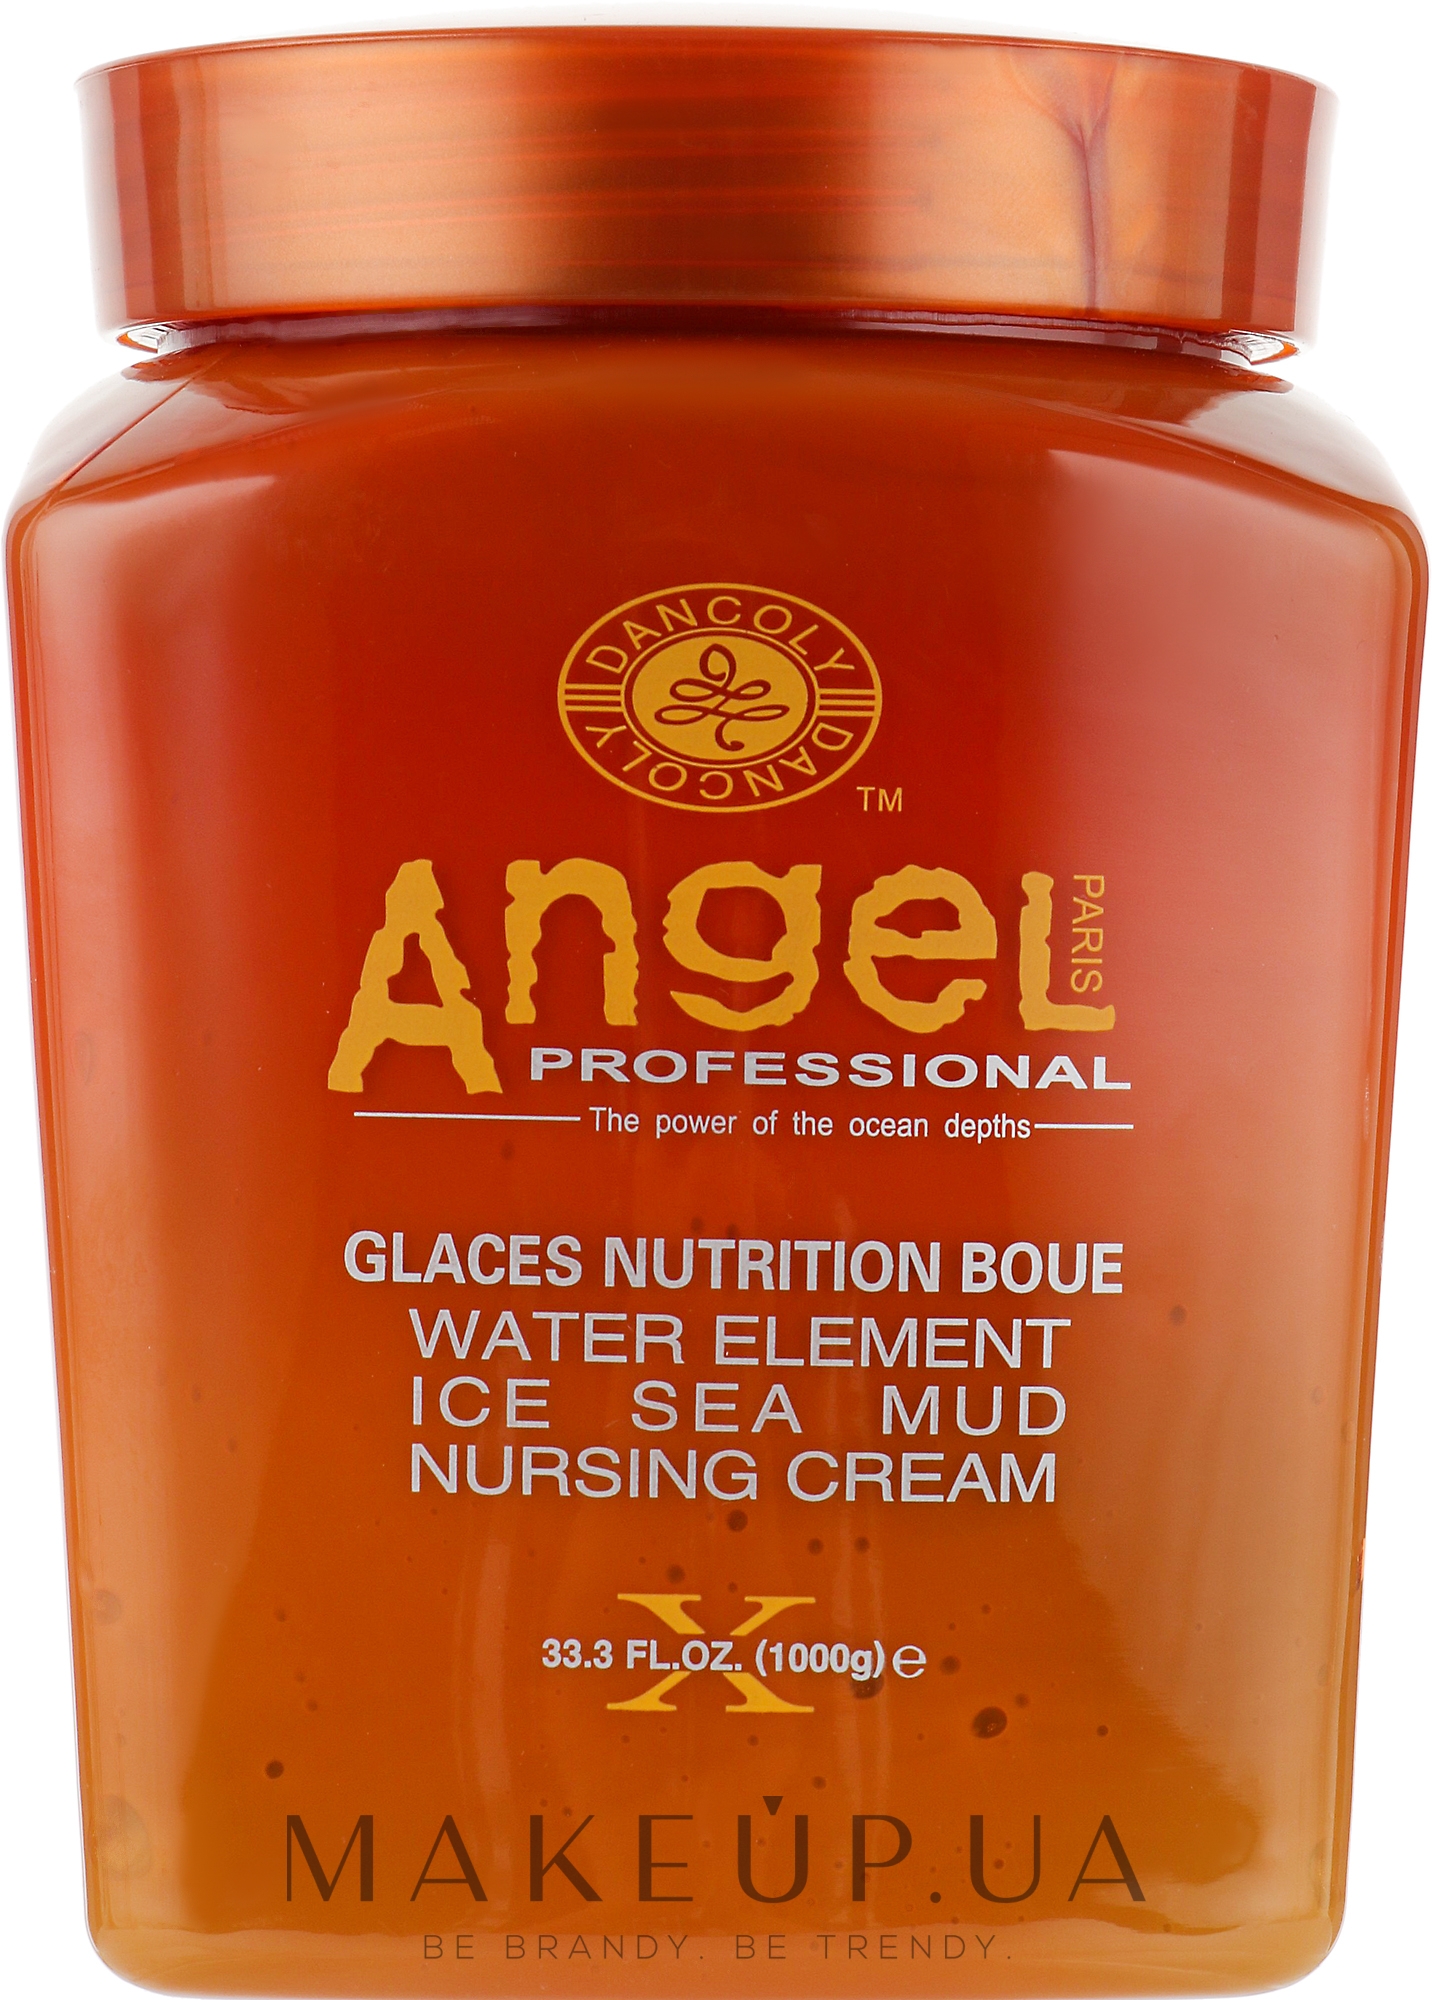 Живильний крем для волосся із замороженою морською гряззю - Angel Professional Paris Water Element Ice Sea Mud Nursing Cream — фото 1000g